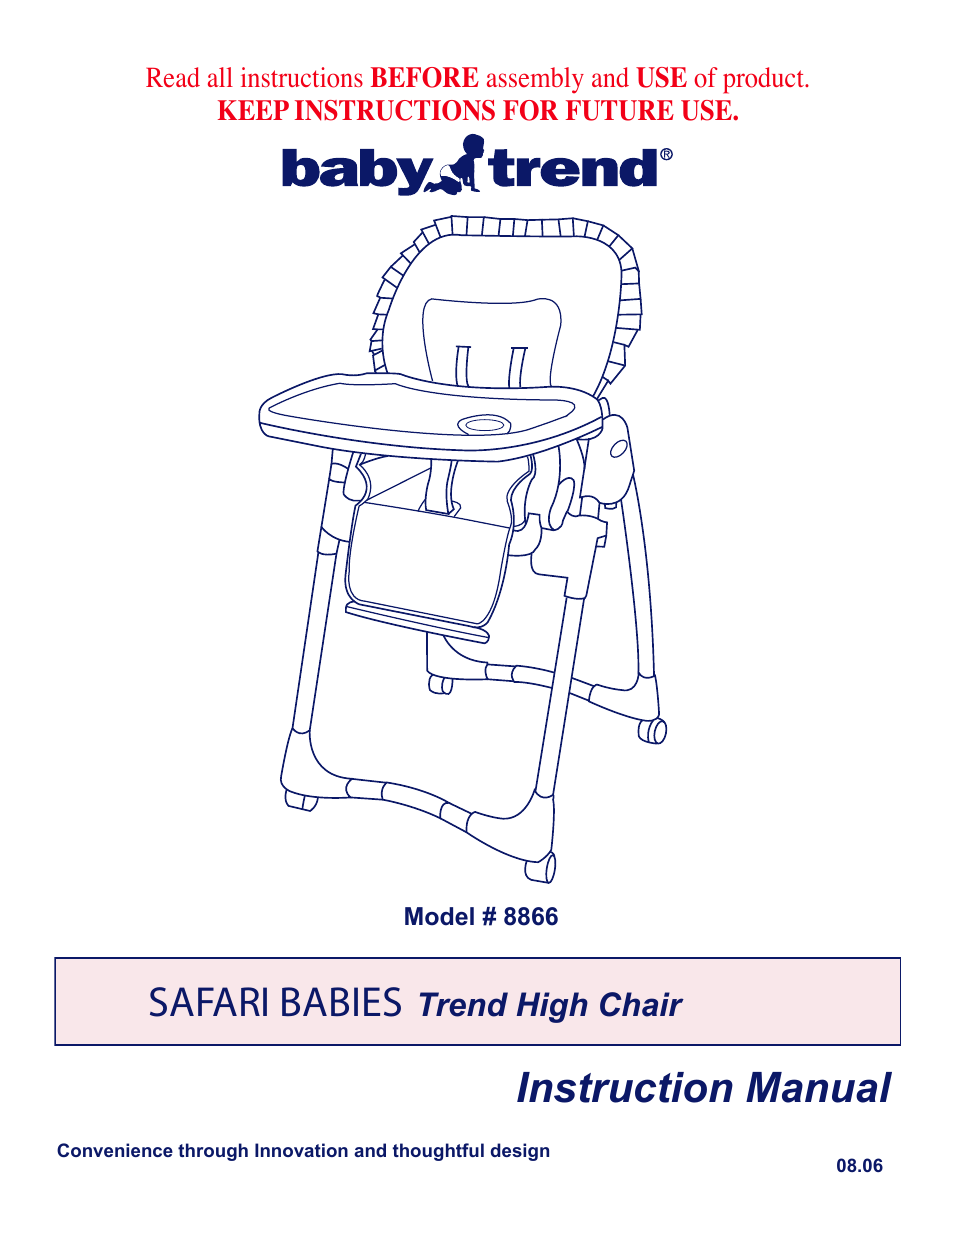 SAFARI BABIES Trend High Chair 8866